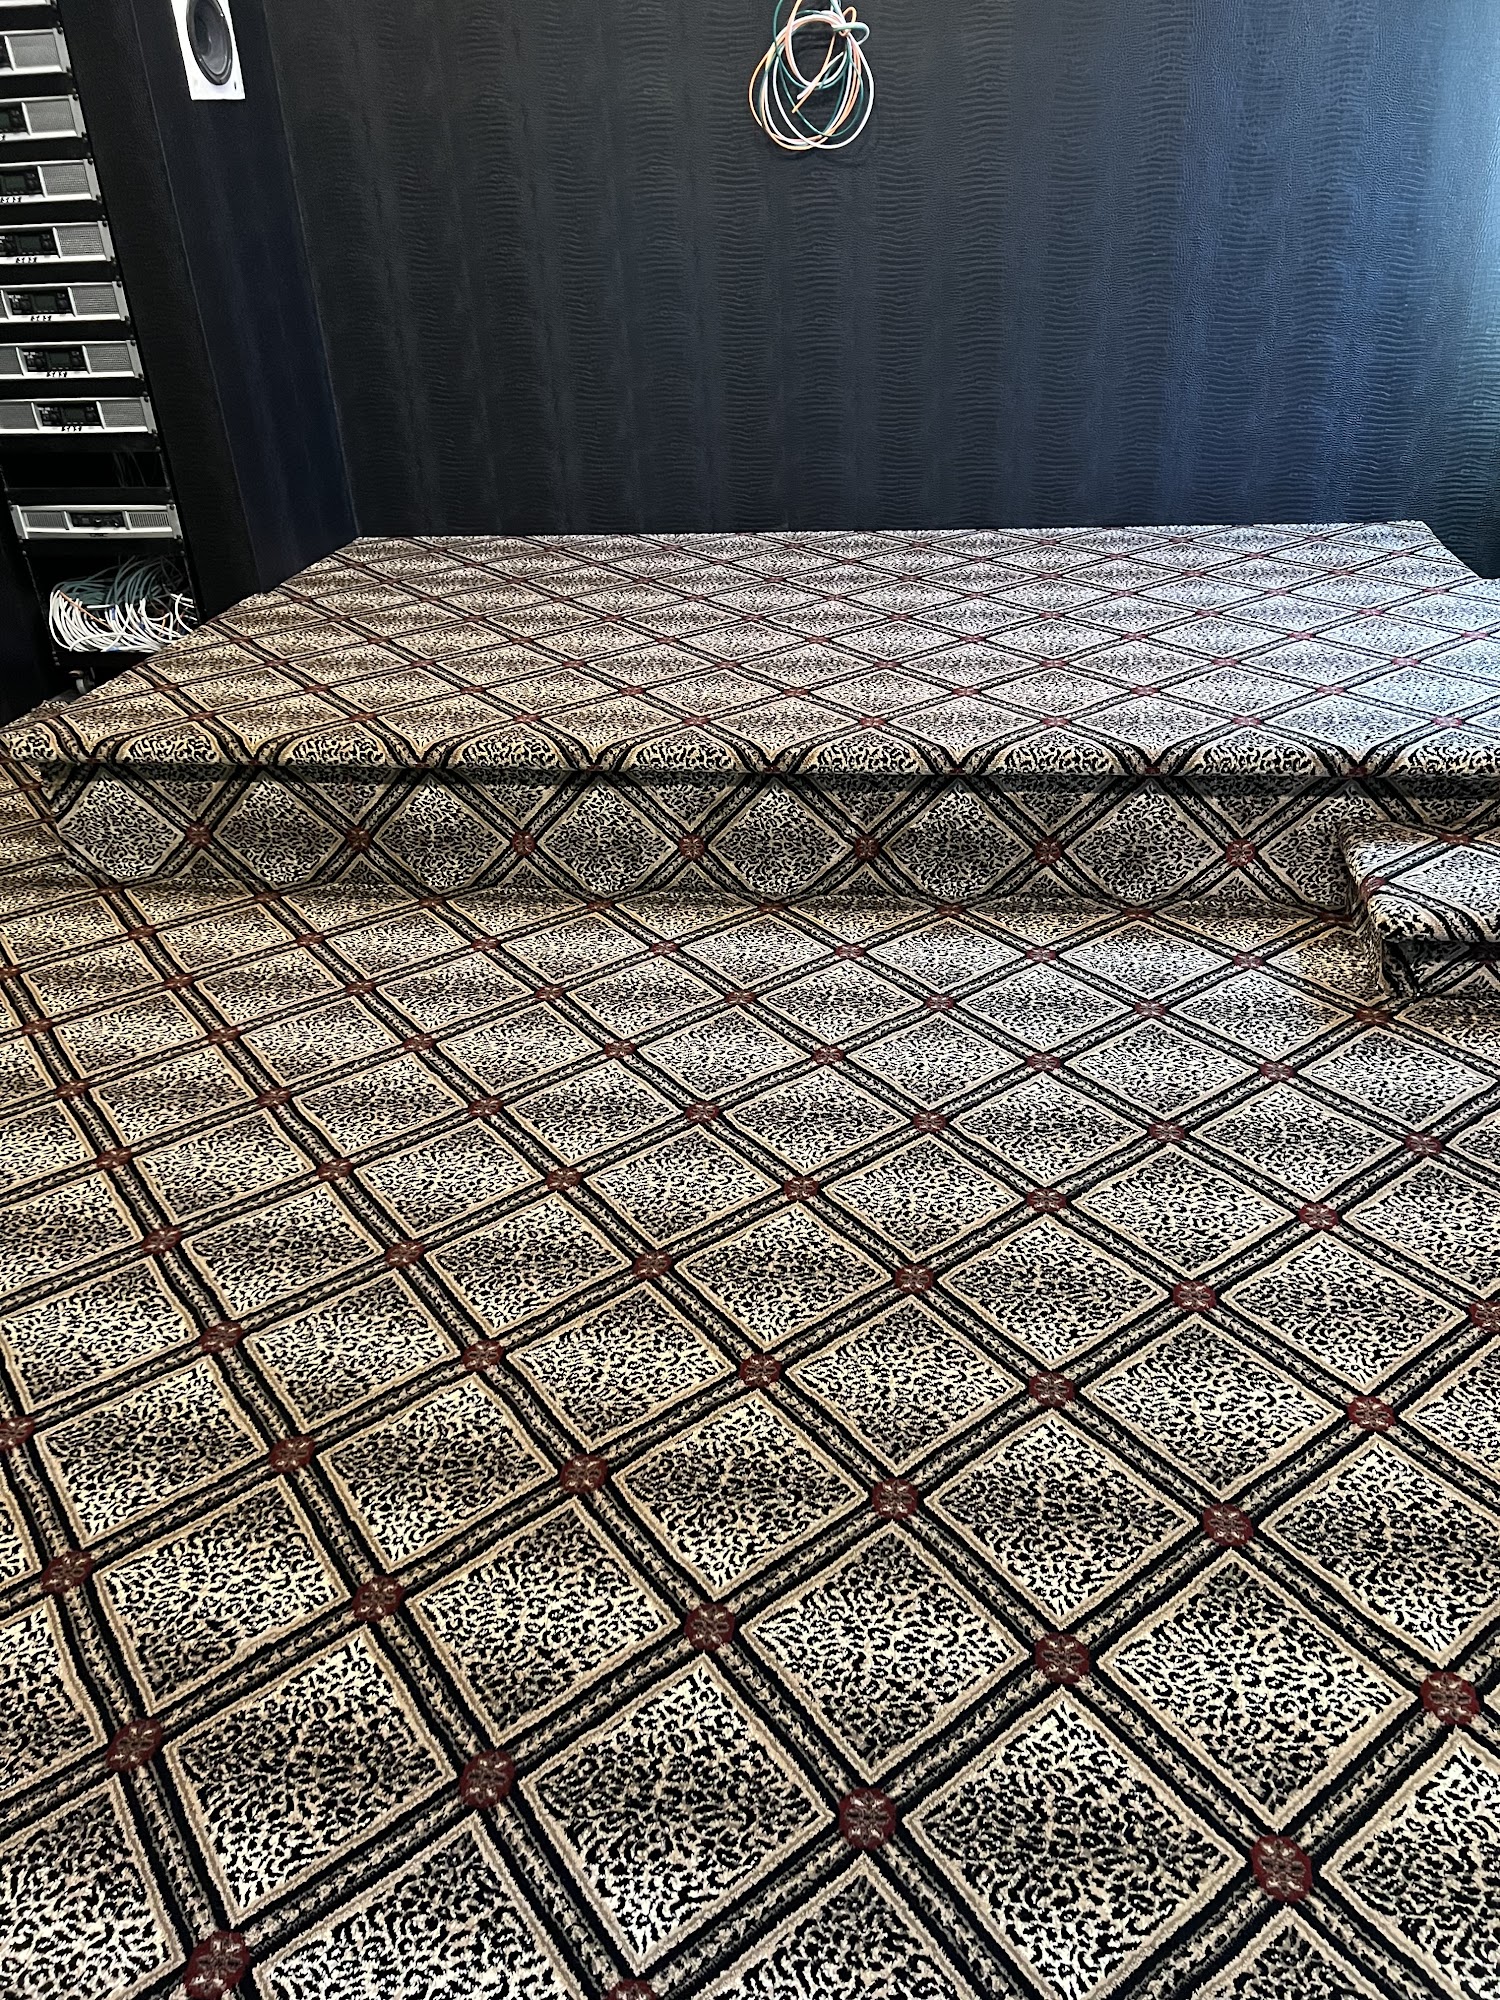 Felikian's Carpet One Floor & Home